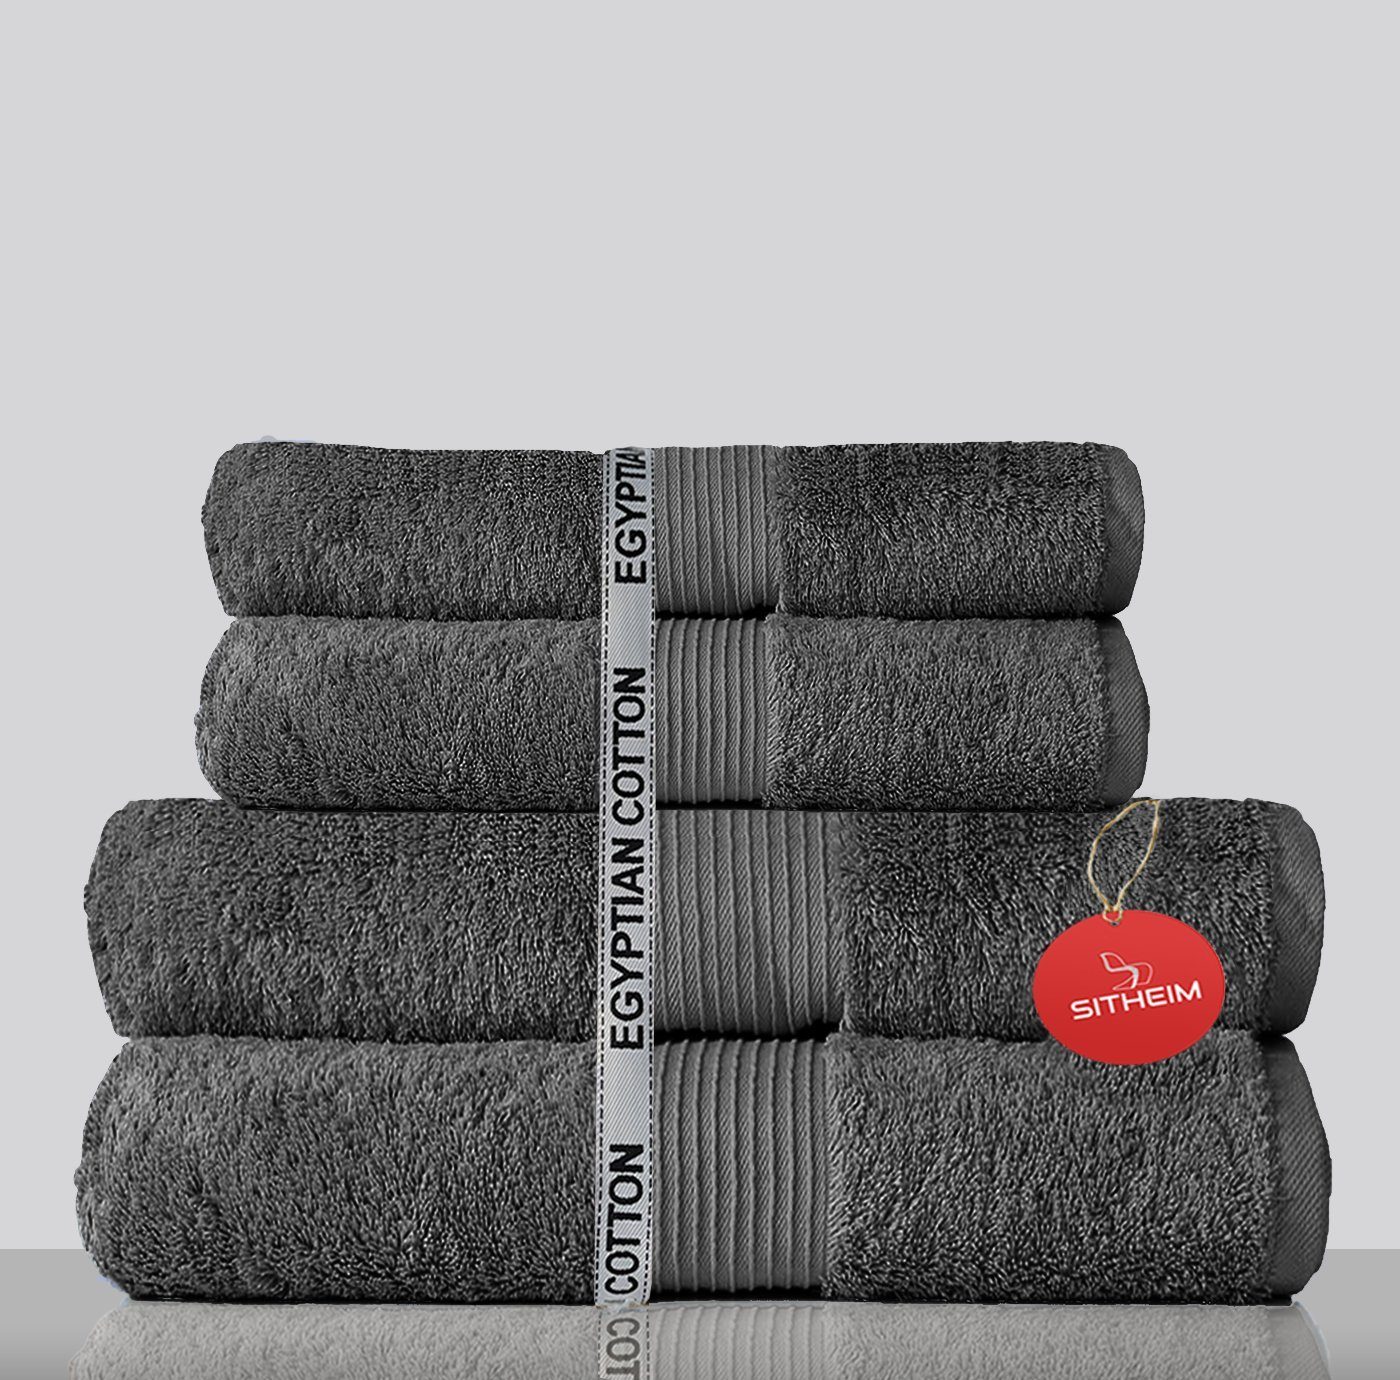 Sitheim-Europe Handtuch Set »GIZA LINE Handtücher aus 100% ägyptischer  Baumwolle 4-teiliges Handtuchset« (4-tlg), 100% premium ägyptische  Baumwolle online kaufen | OTTO